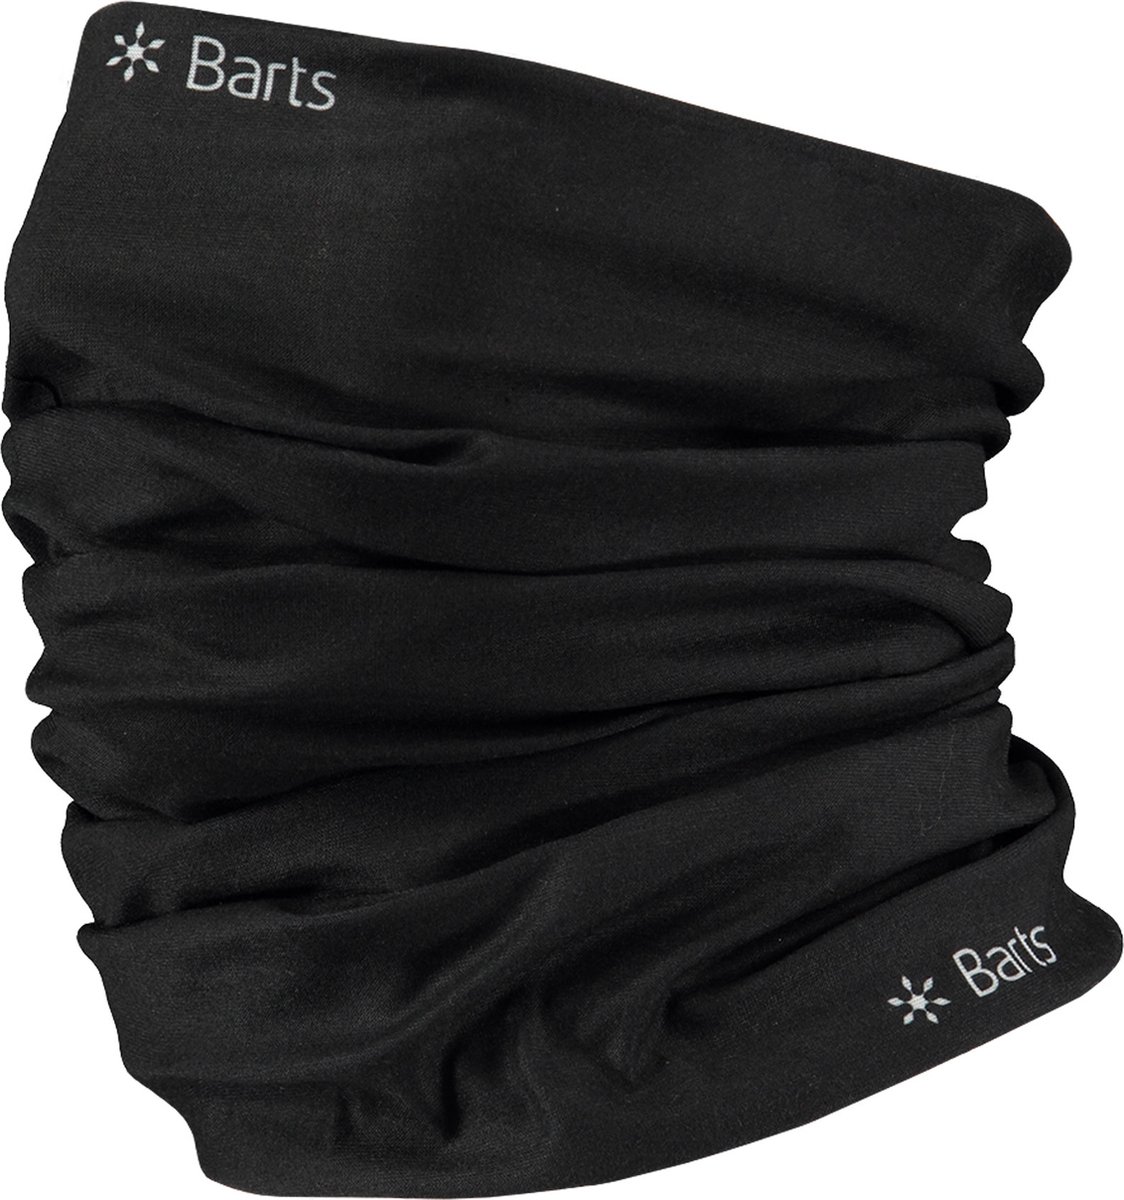 Barts Multicol Nekwarmer Unisex - One Size - Barts